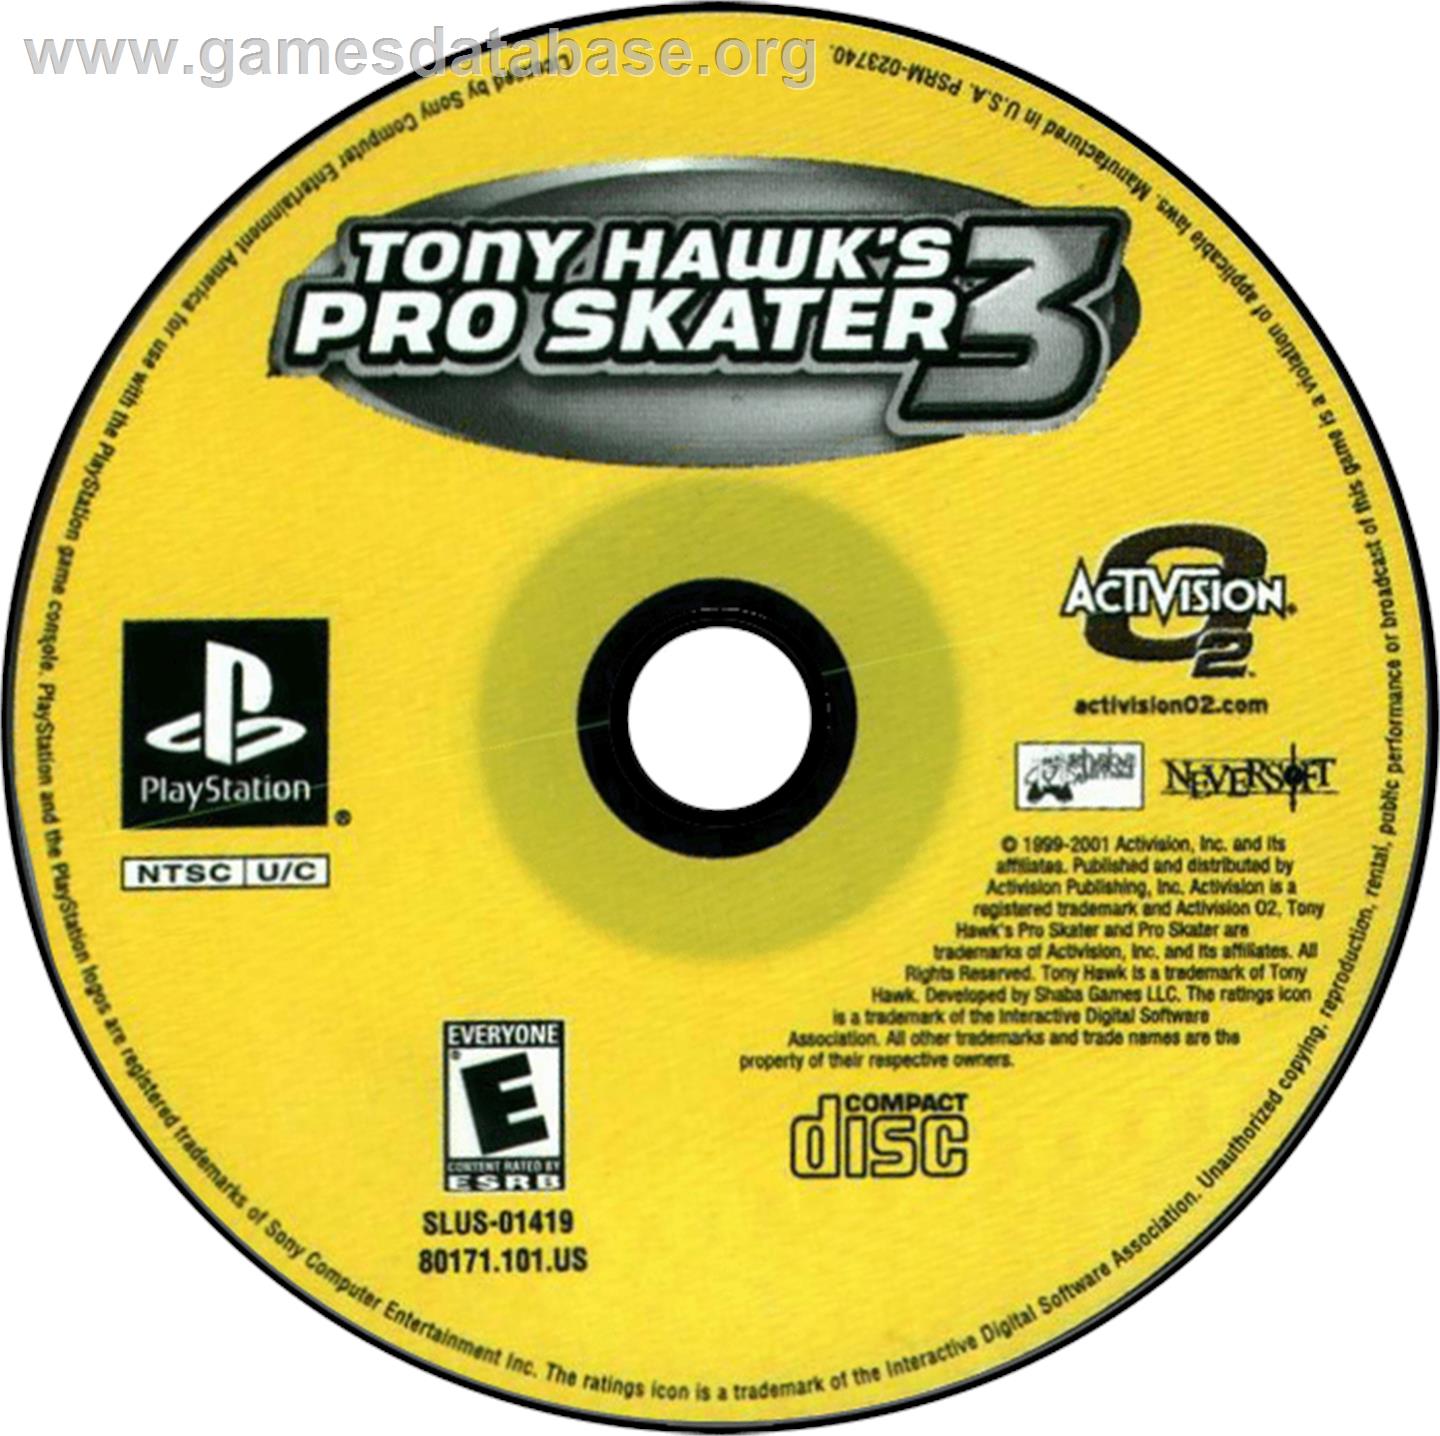 Tony Hawk's Pro Skater 3 - Sony Playstation - Artwork - Disc